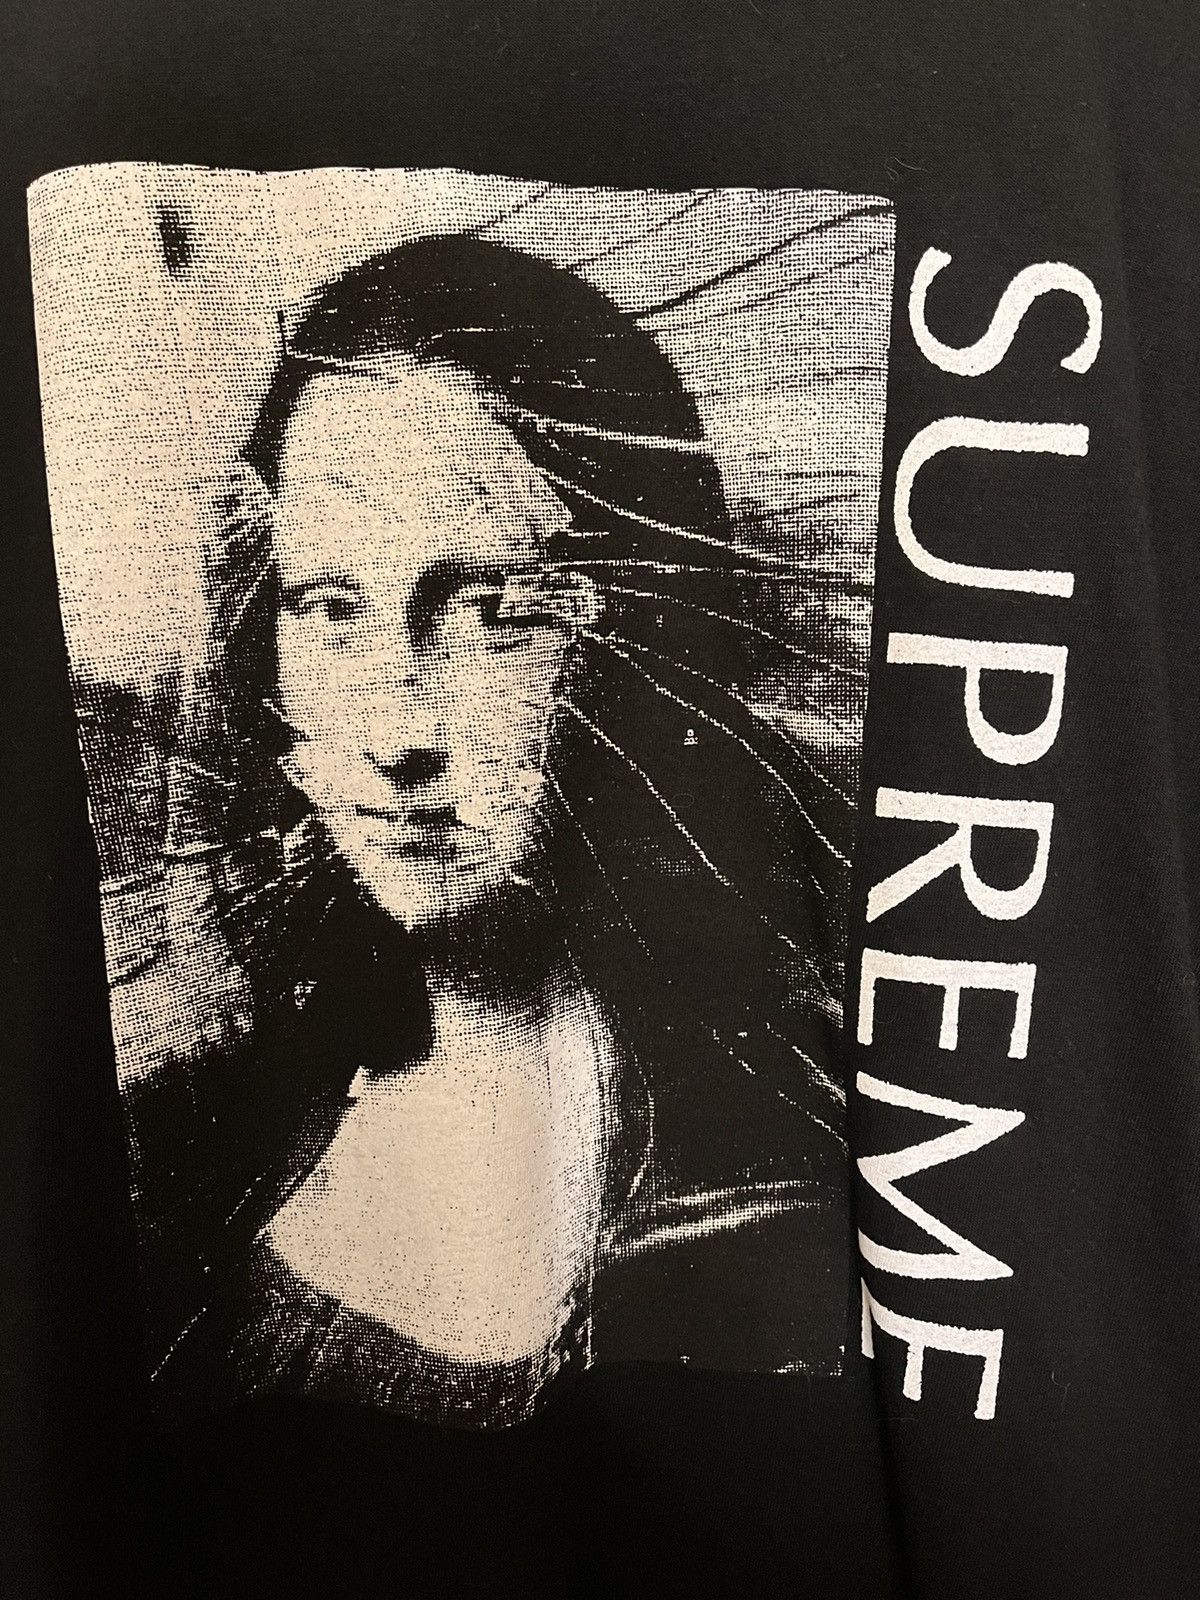 Supreme Supreme Mona Lisa Tee | Grailed